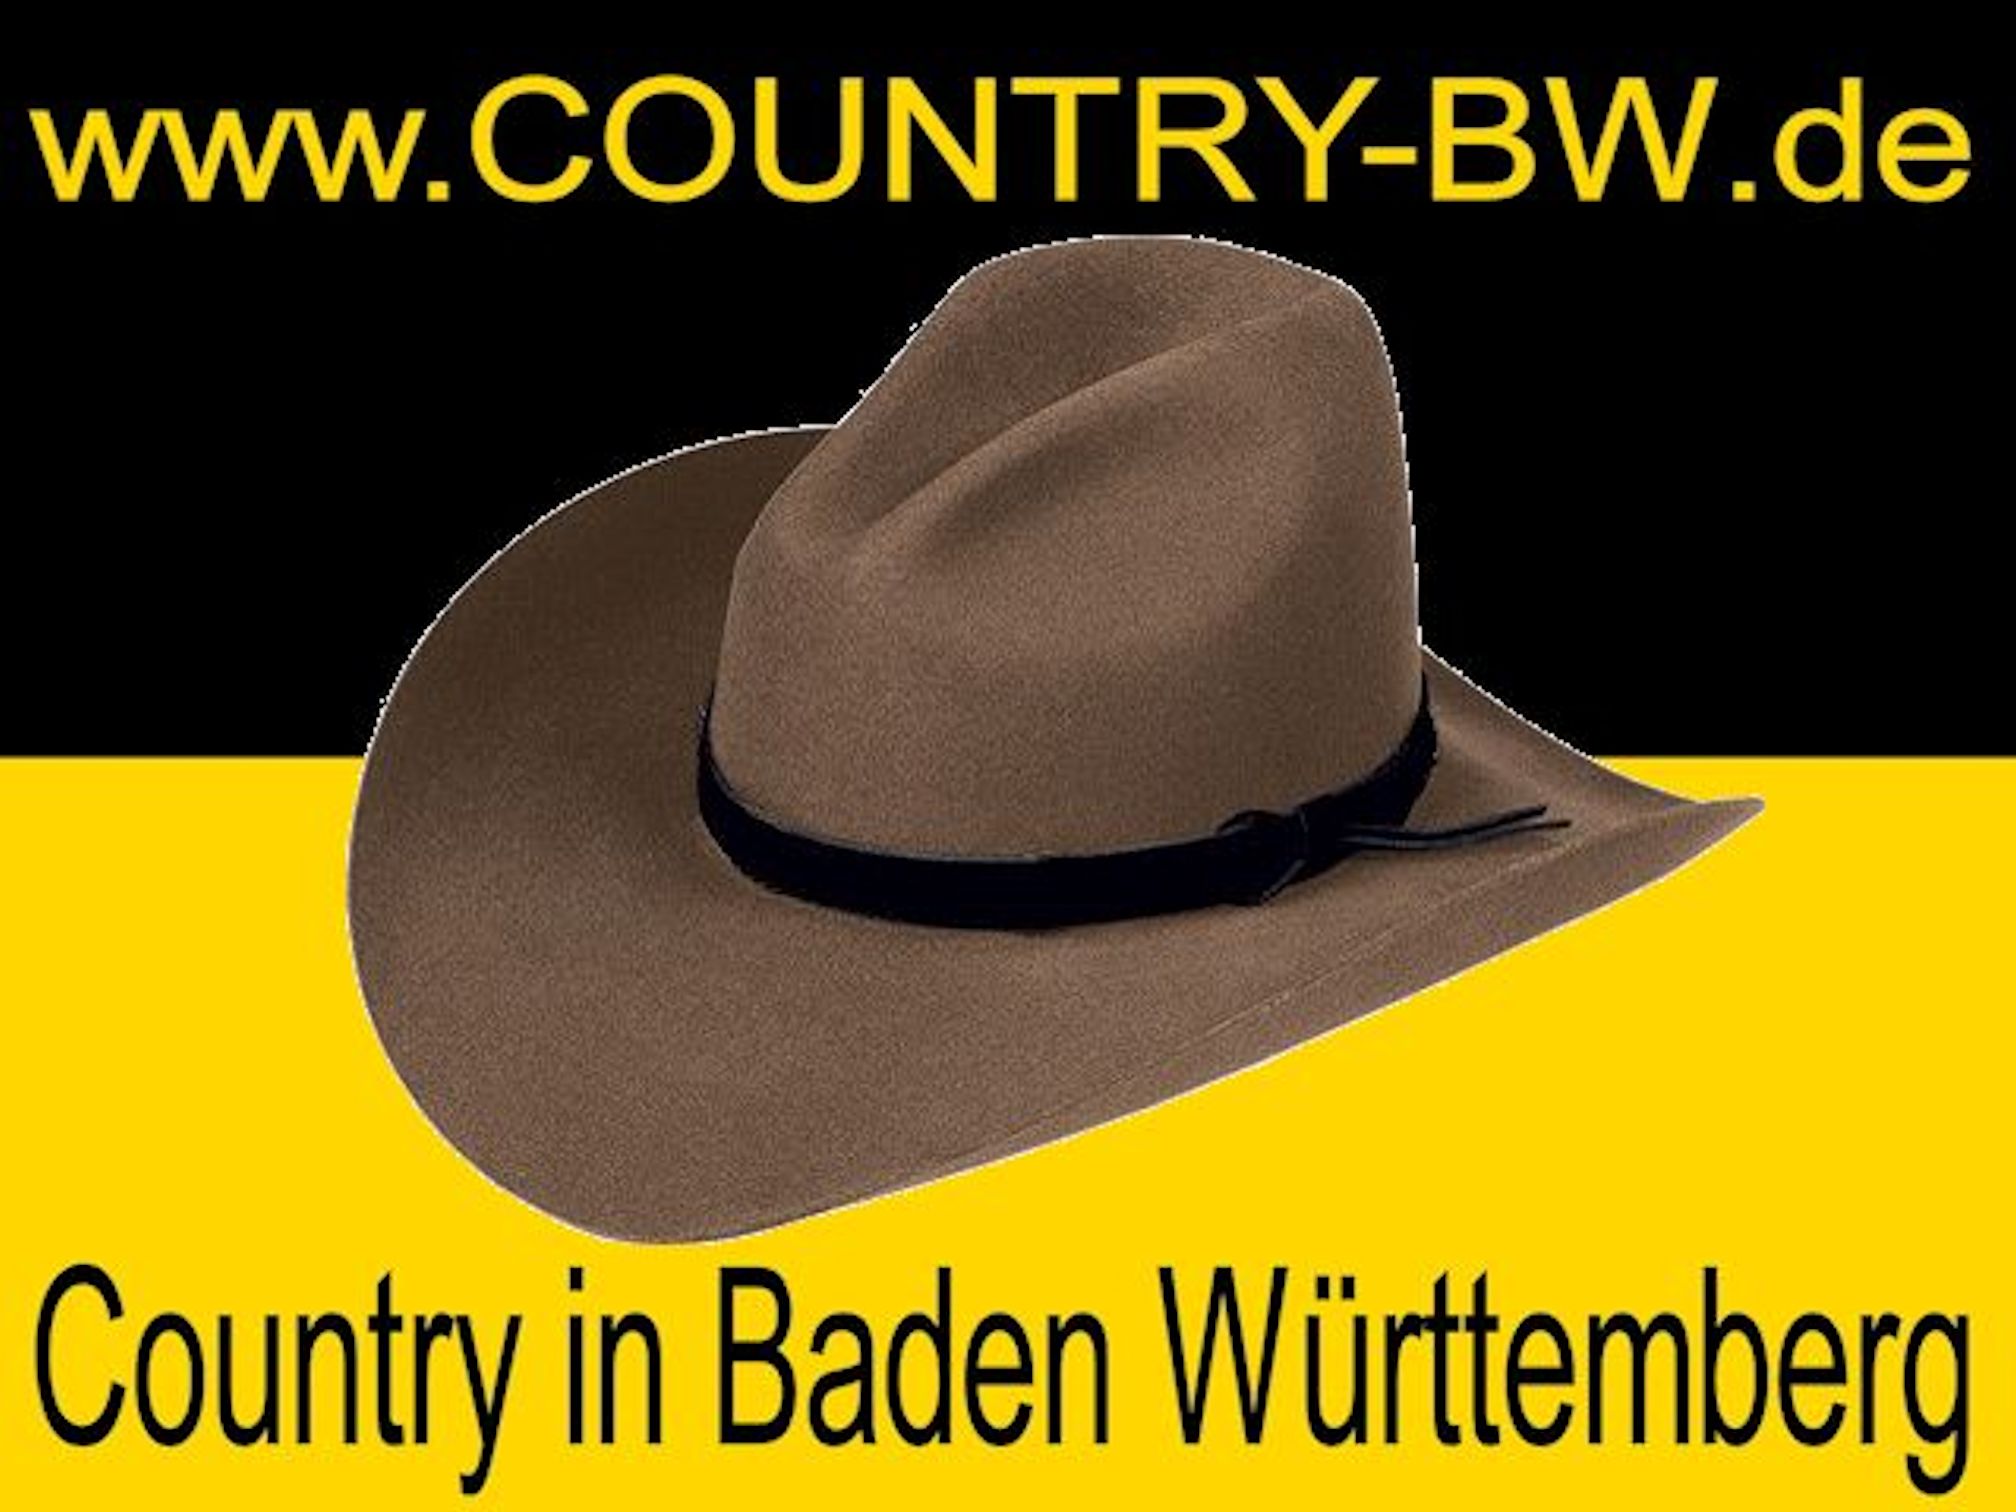 www.country-bw.de - Dein Countrykalender für Baden-Württemberg´s Country- und Westernszene